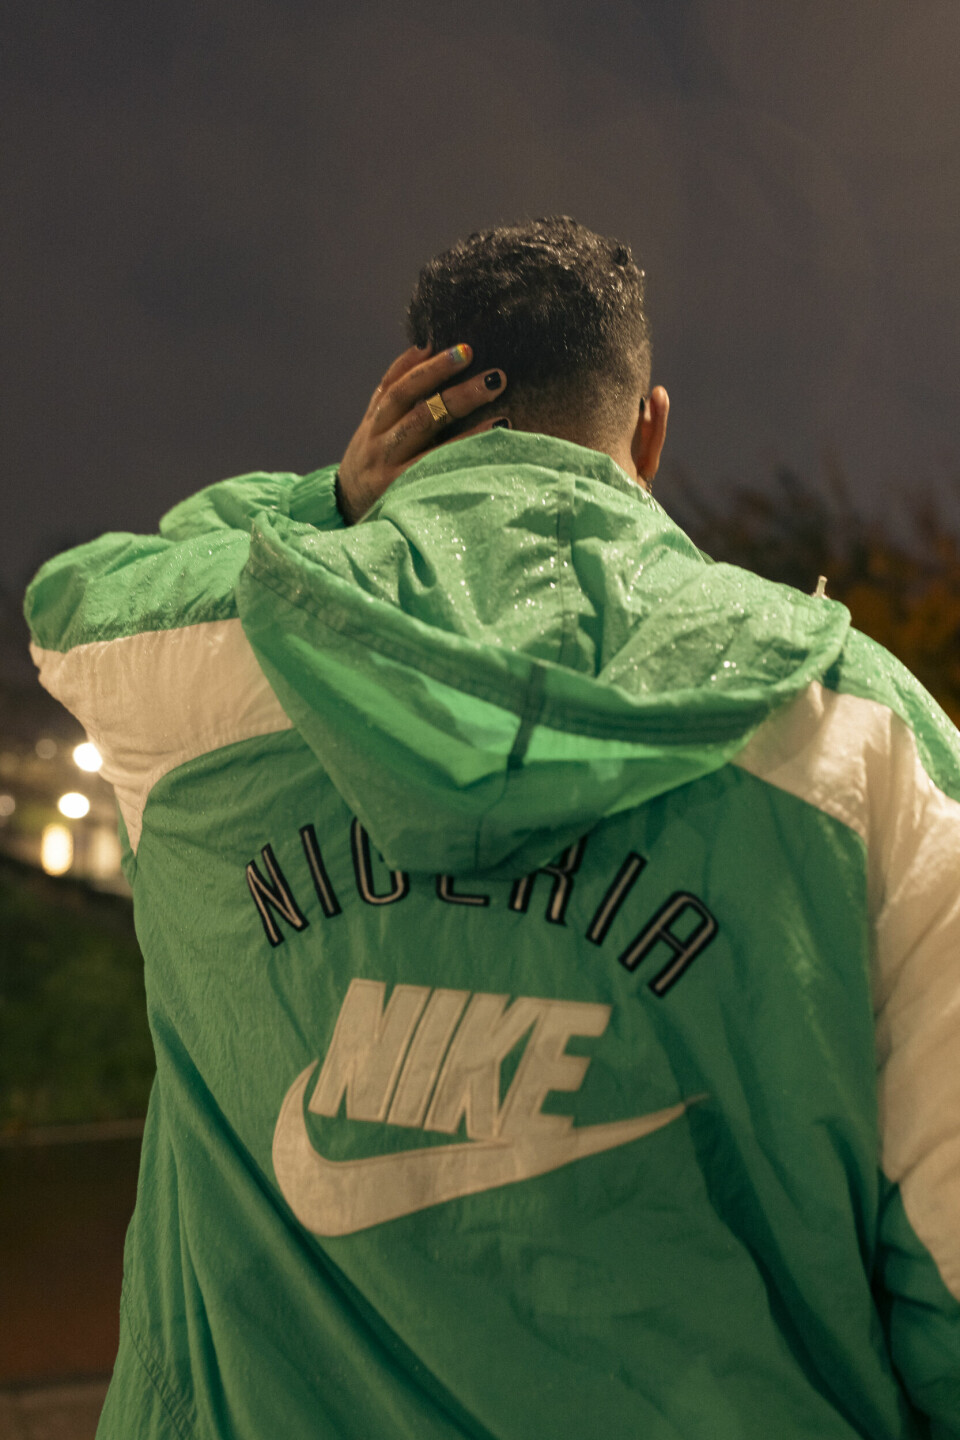 Nanoah Struik in groen Nike-jasje met daarop het woord Nigeria